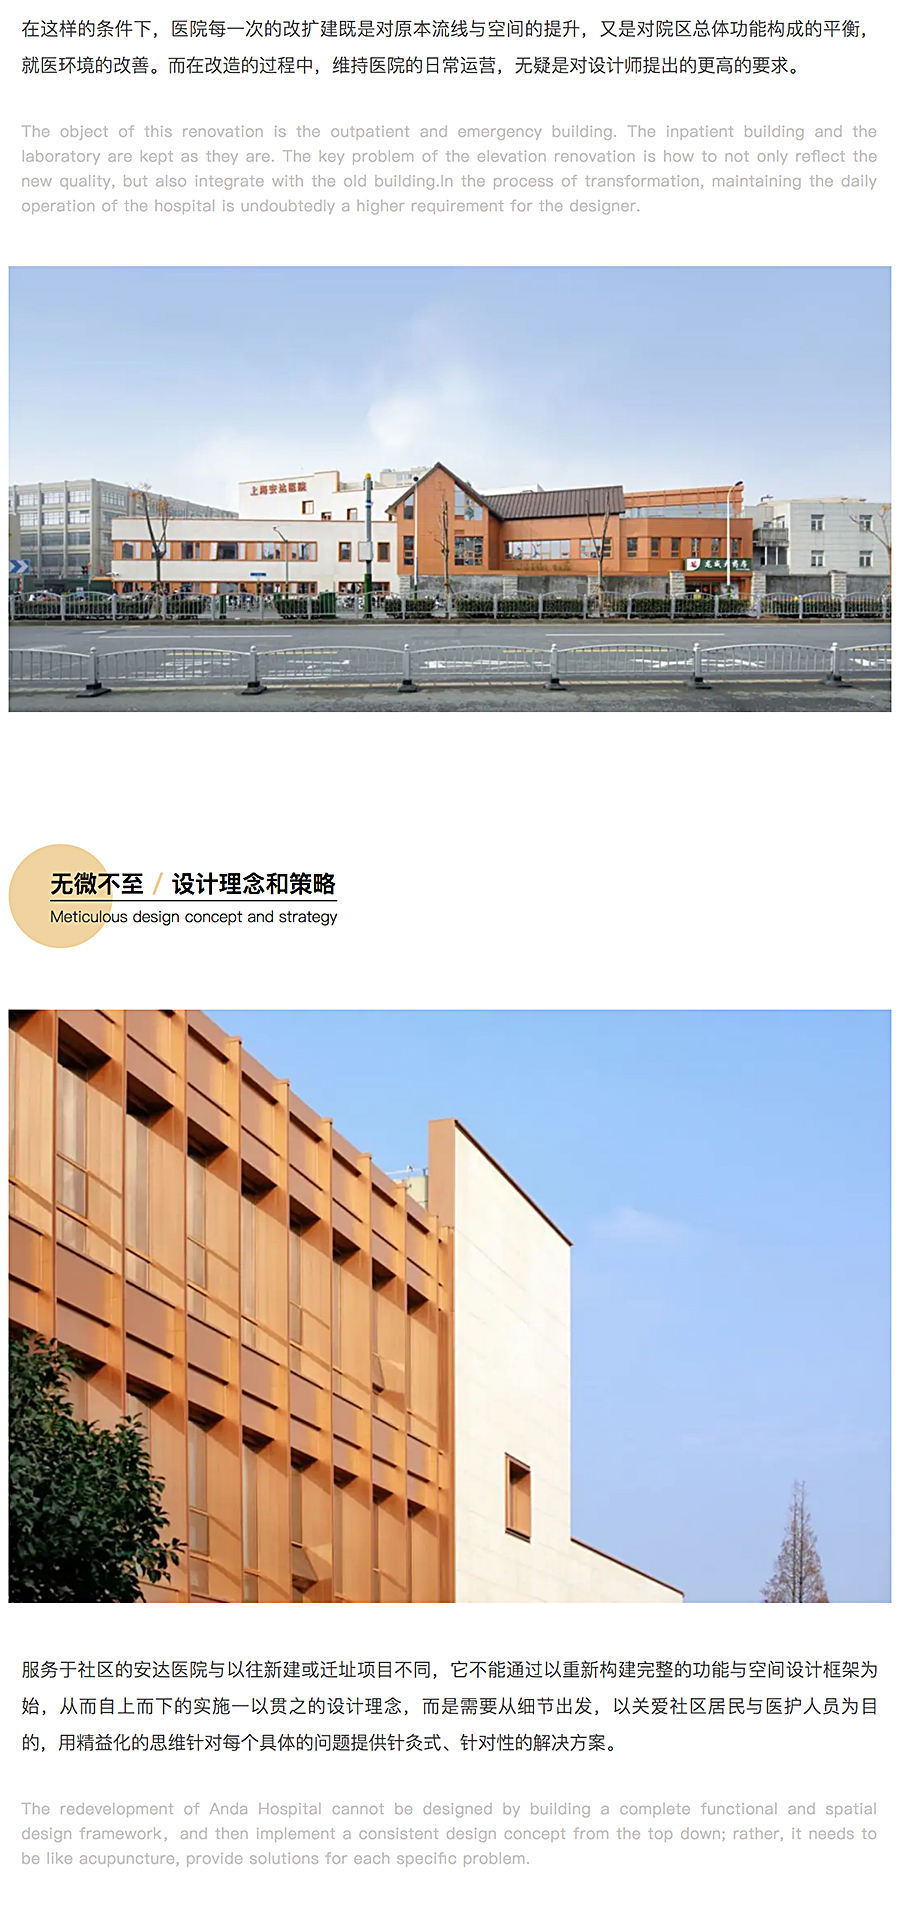 ⽆微不⾄，精益化思维下的上海安达医院⻔急诊改造_0003_图层-4.jpg